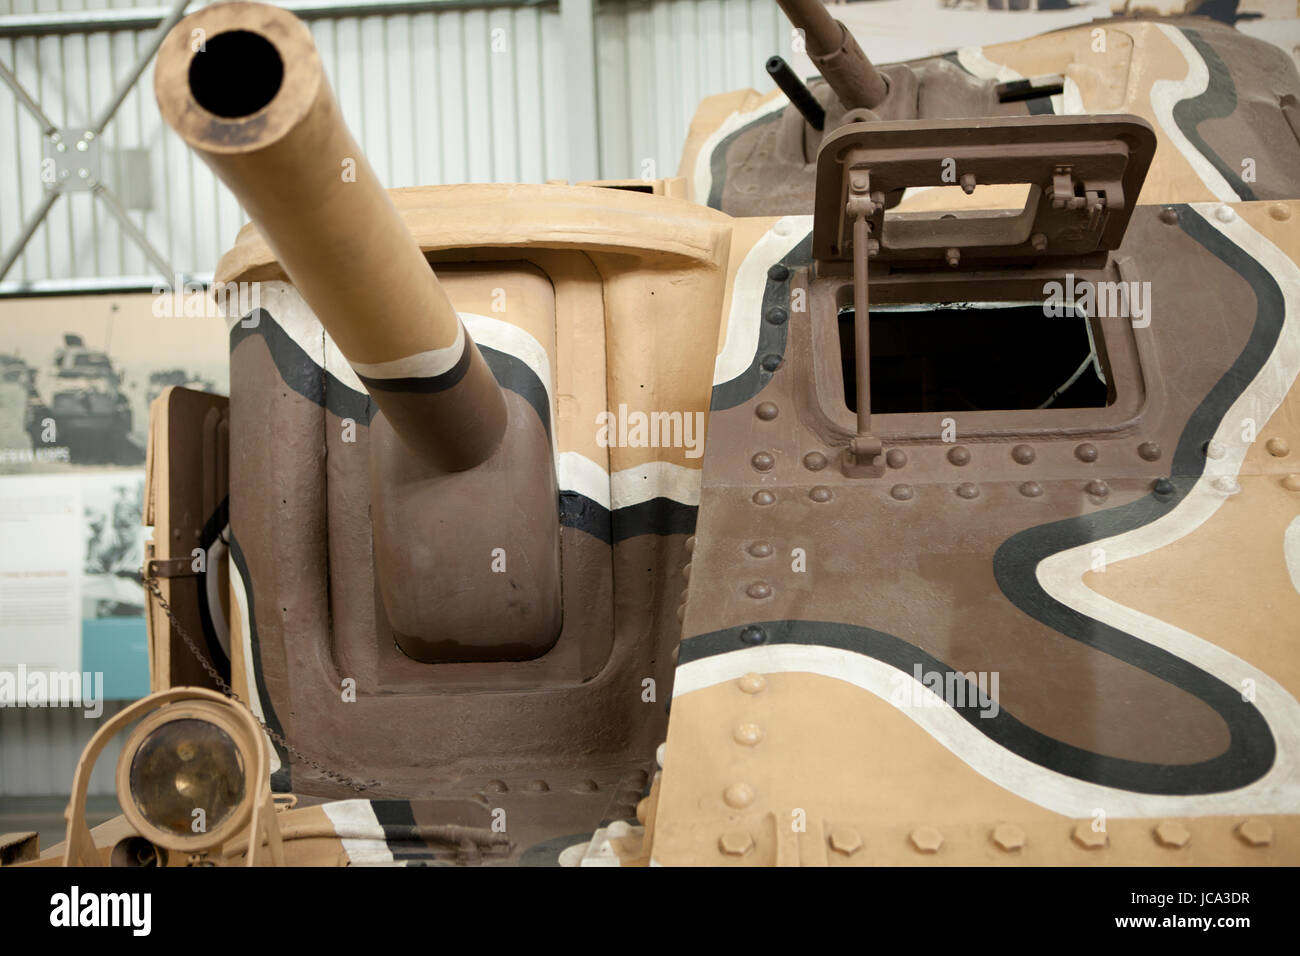 Tank Museum, Dorset, Angleterre- près de 300 véhicules de 26 pays, troisième plus grande collection de véhicules blindés dans le monde. Banque D'Images